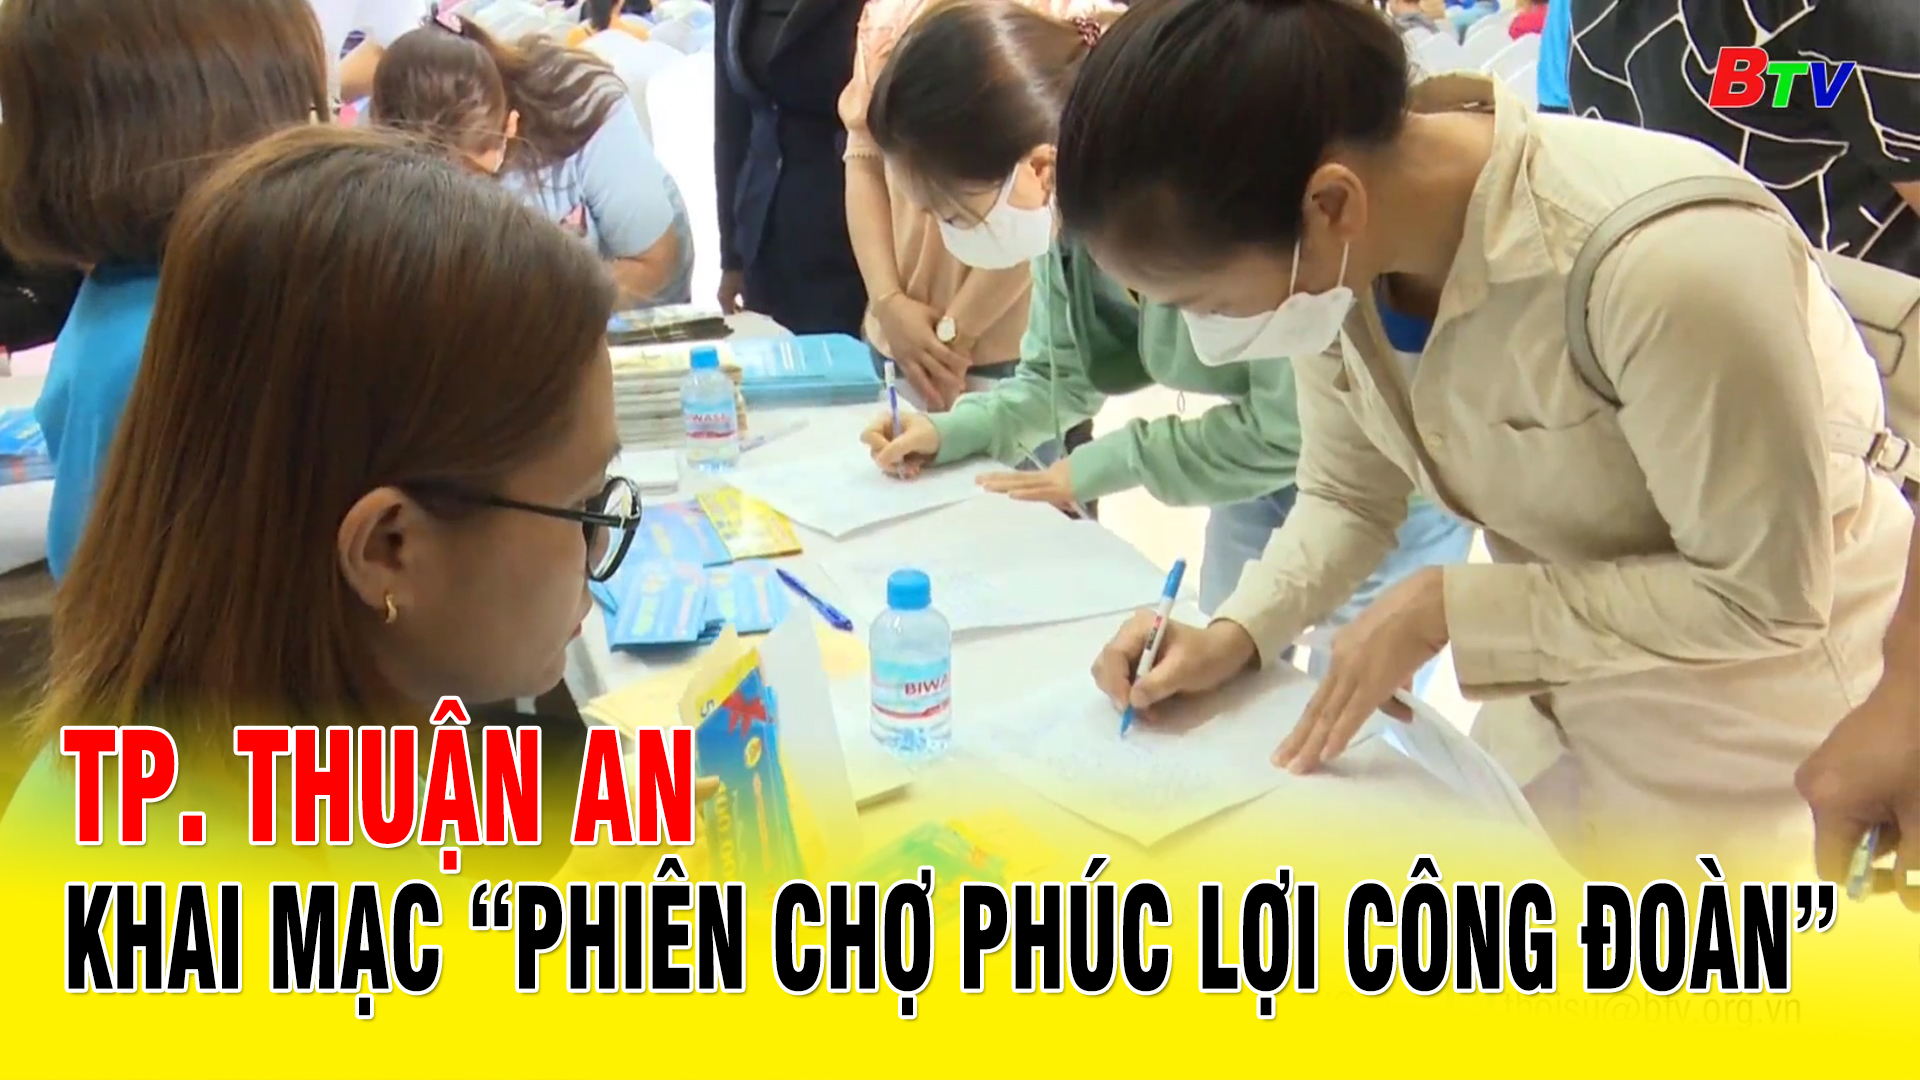 TP. Thuận An - Khai mạc “Phiên chợ phúc lợi công đoàn”